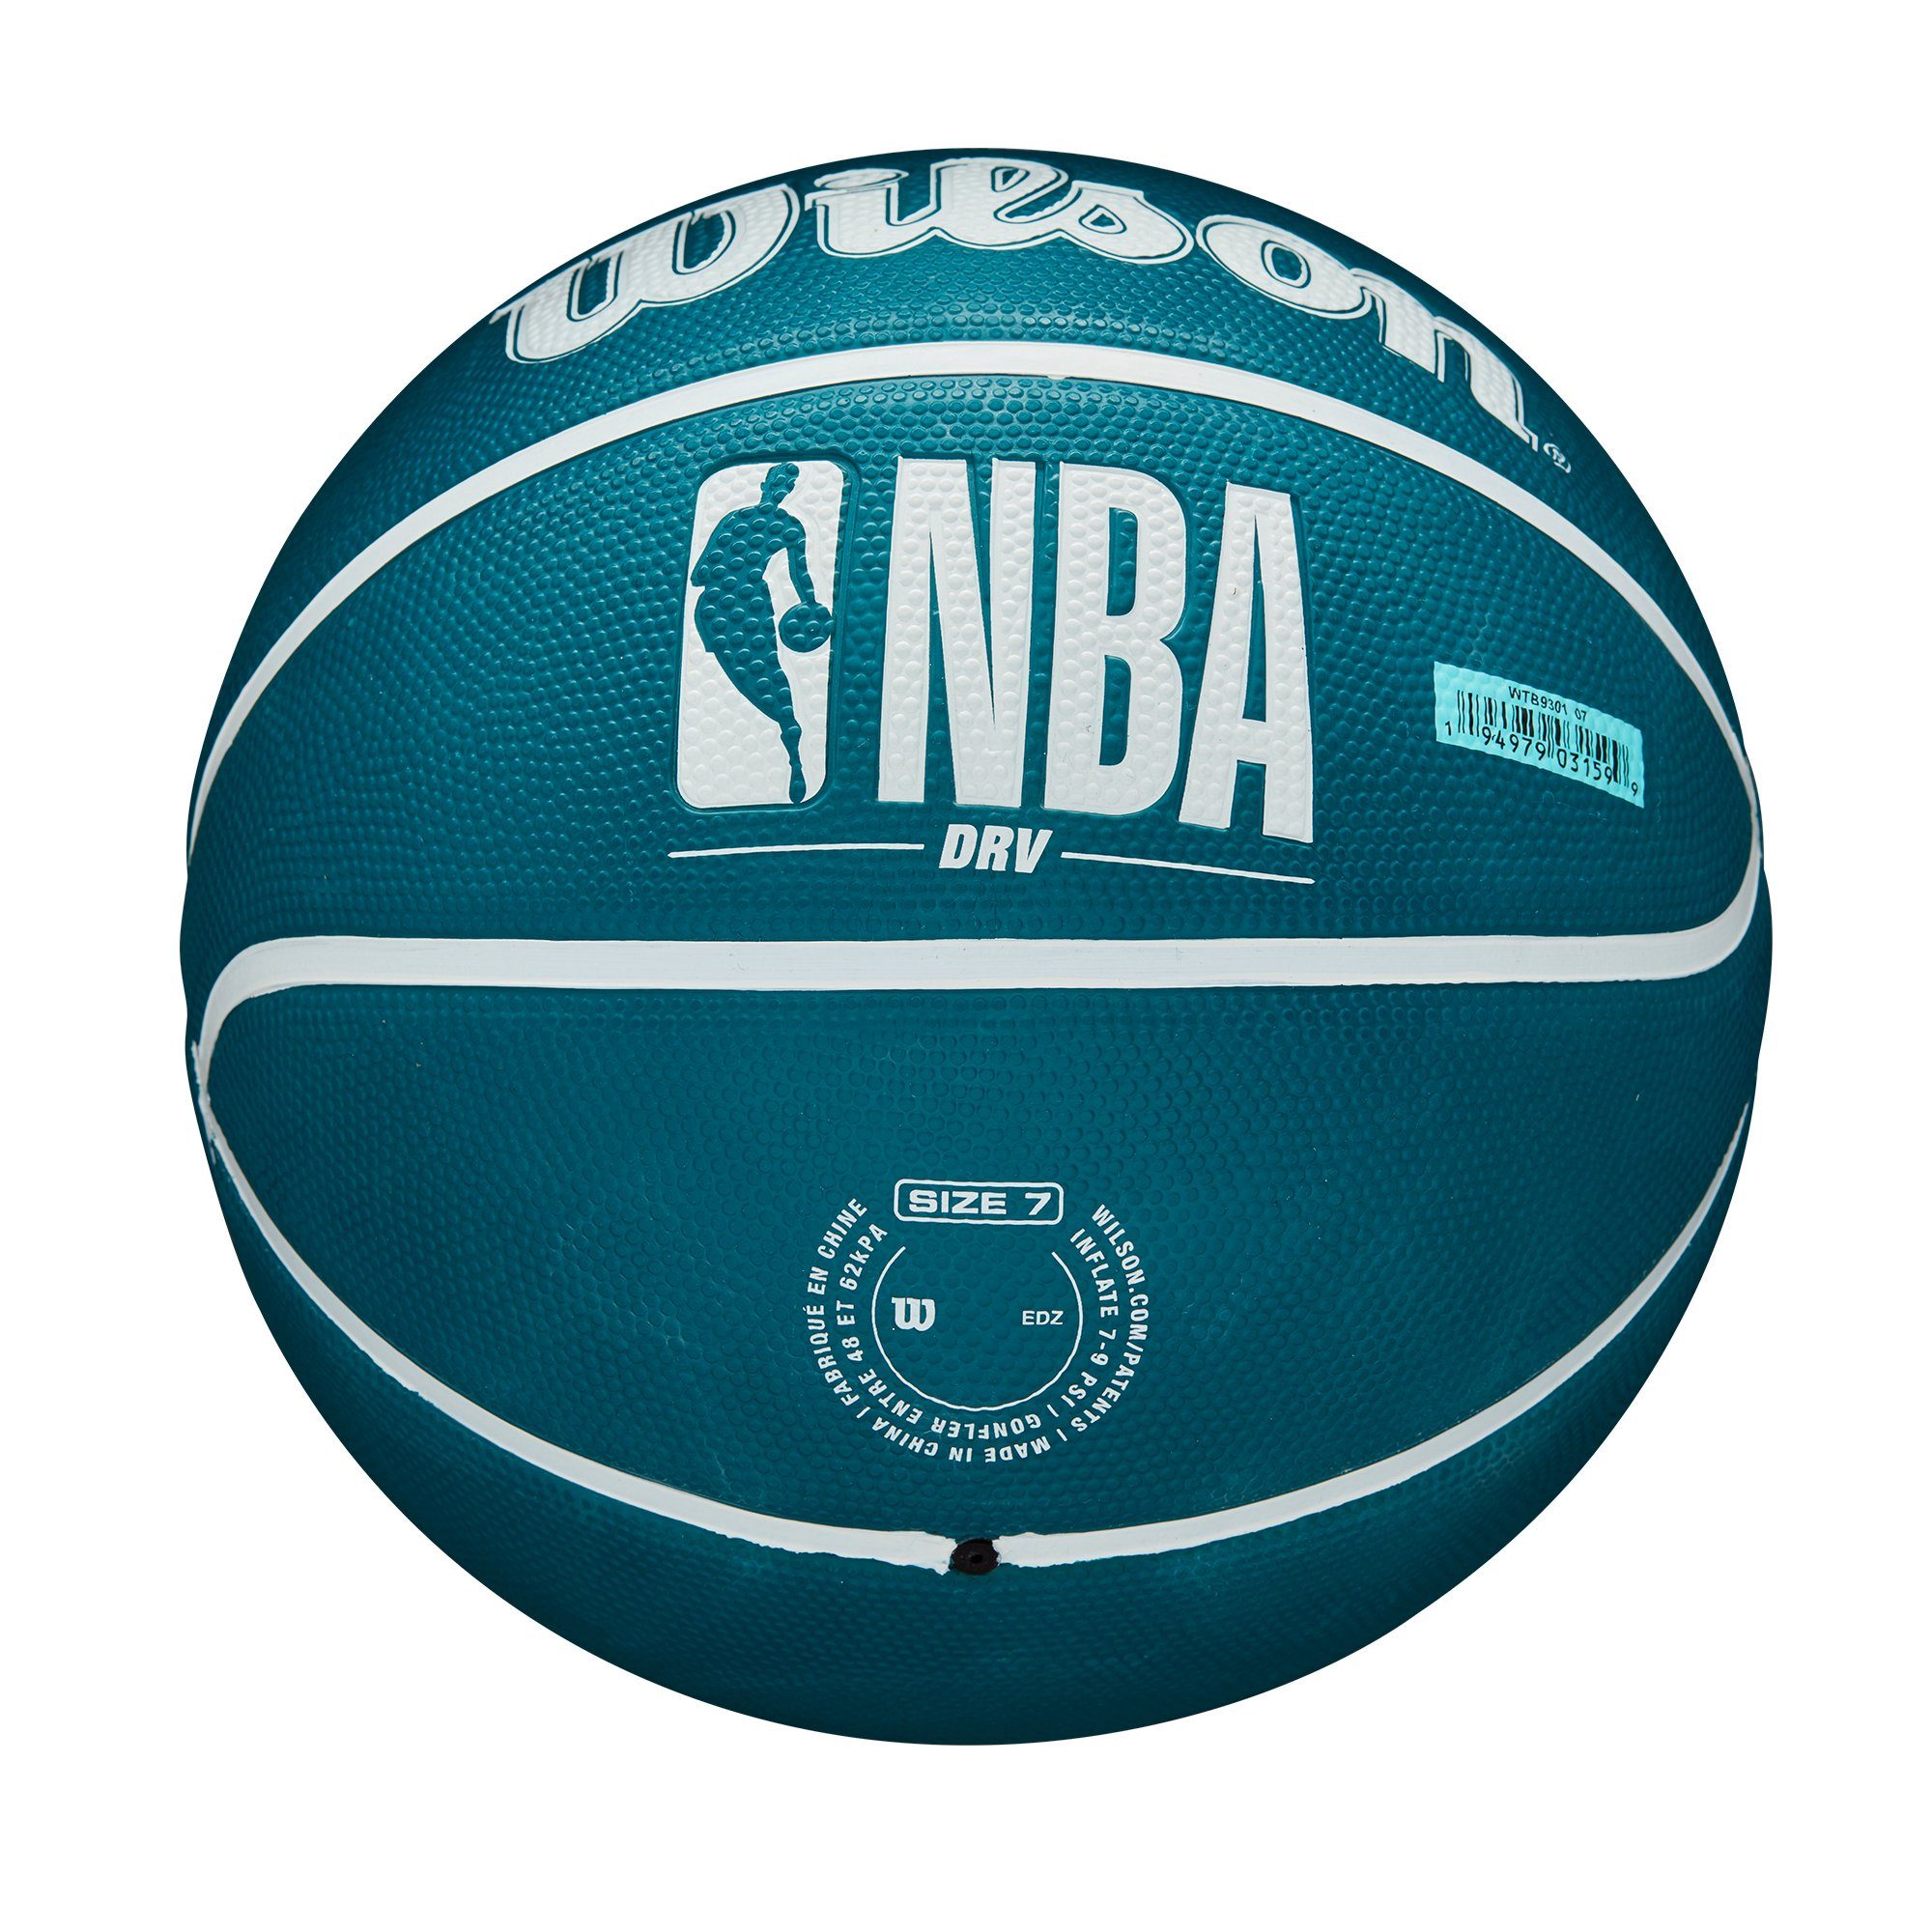 Durchmesser Basketball Gr. NBA 7, grün cm 24 Wilson DRV, Wilson Basketball